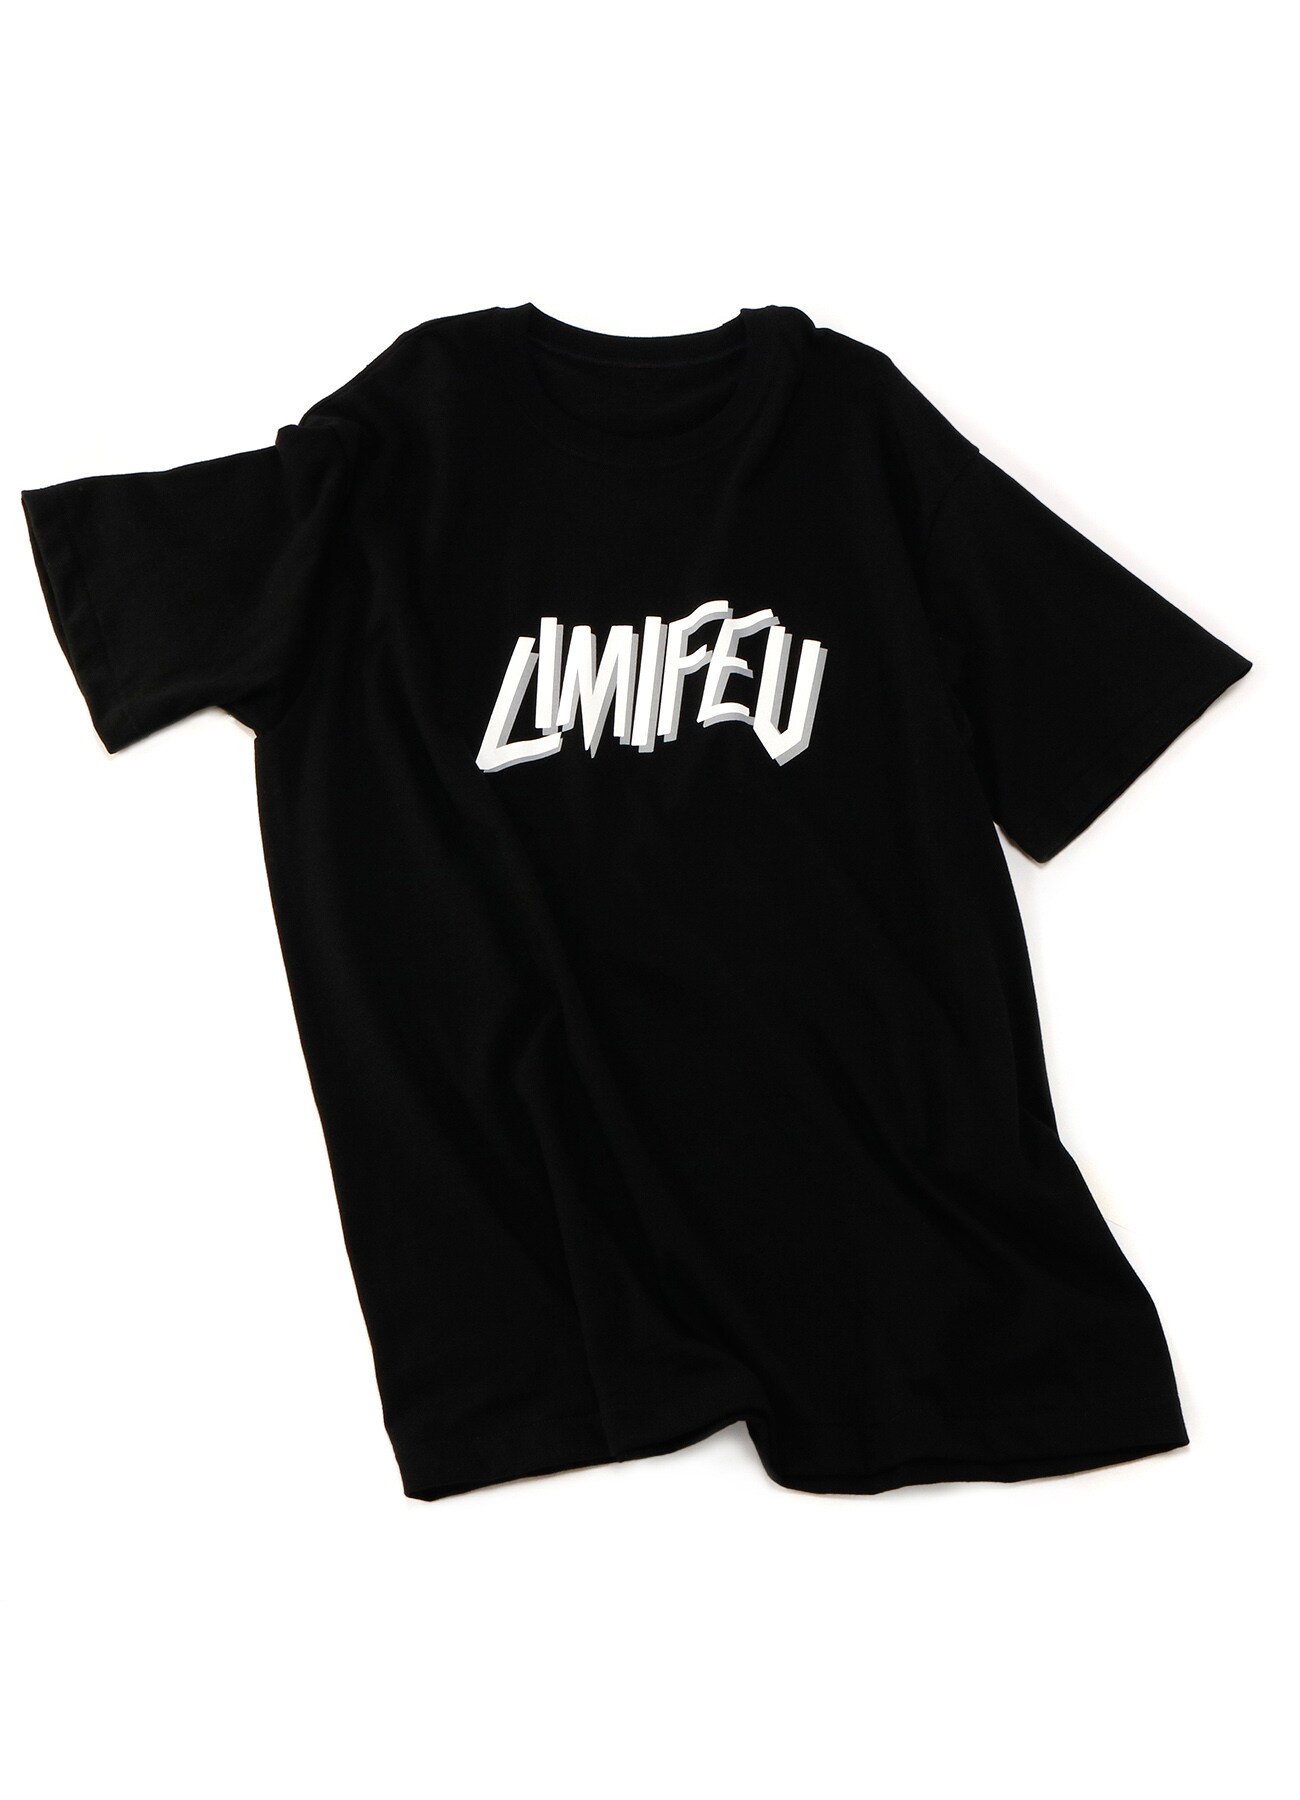 20/-Plain Stitch LIMI FEU Print T-Shirt F